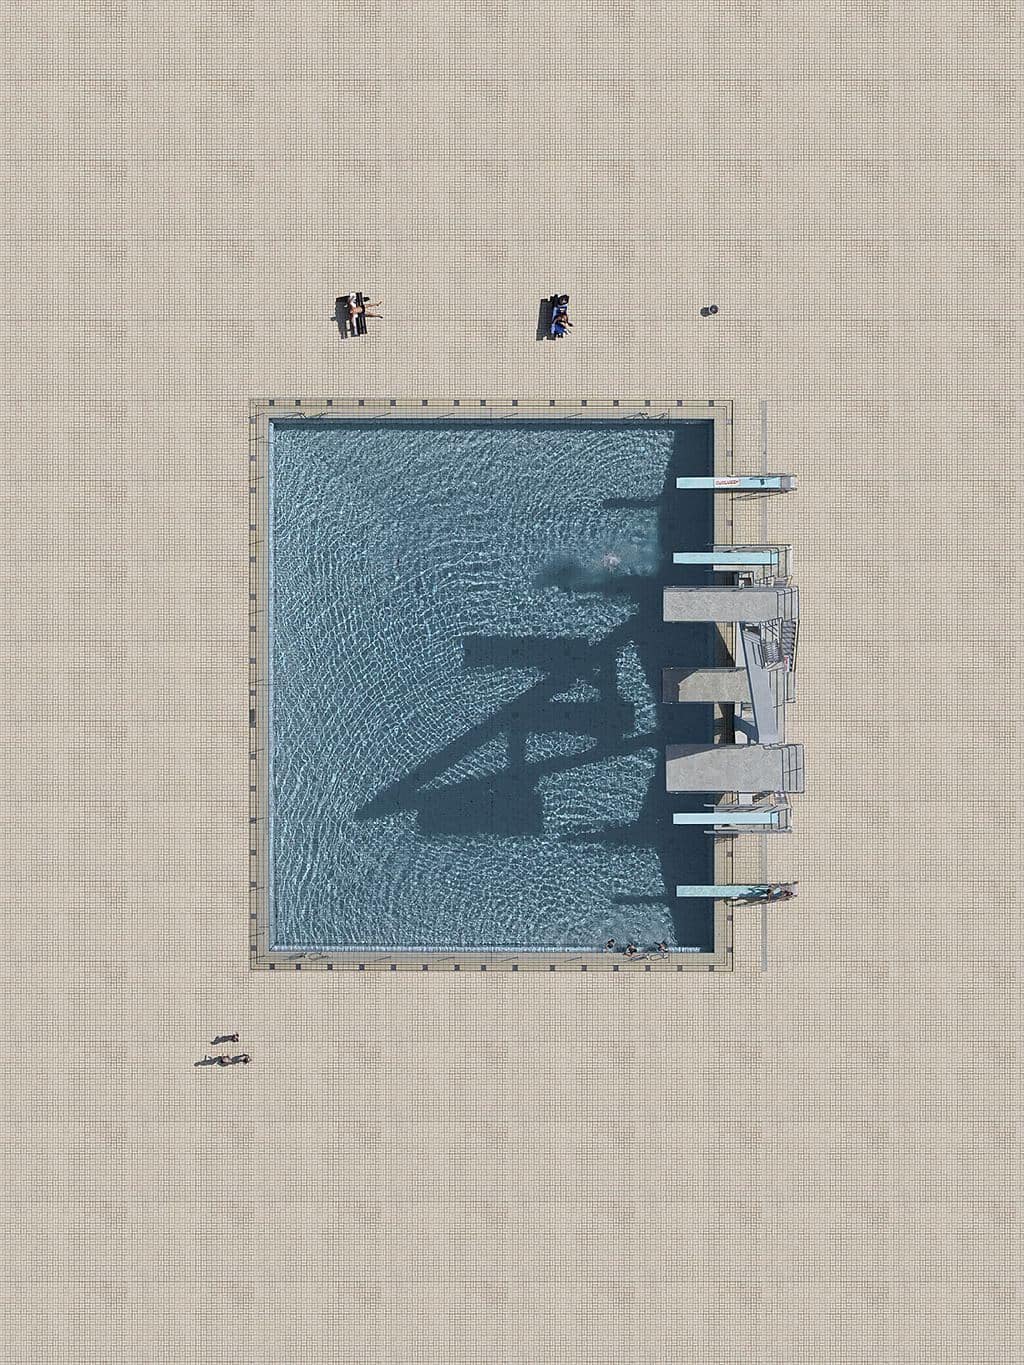 zwembad vanuit de lucht